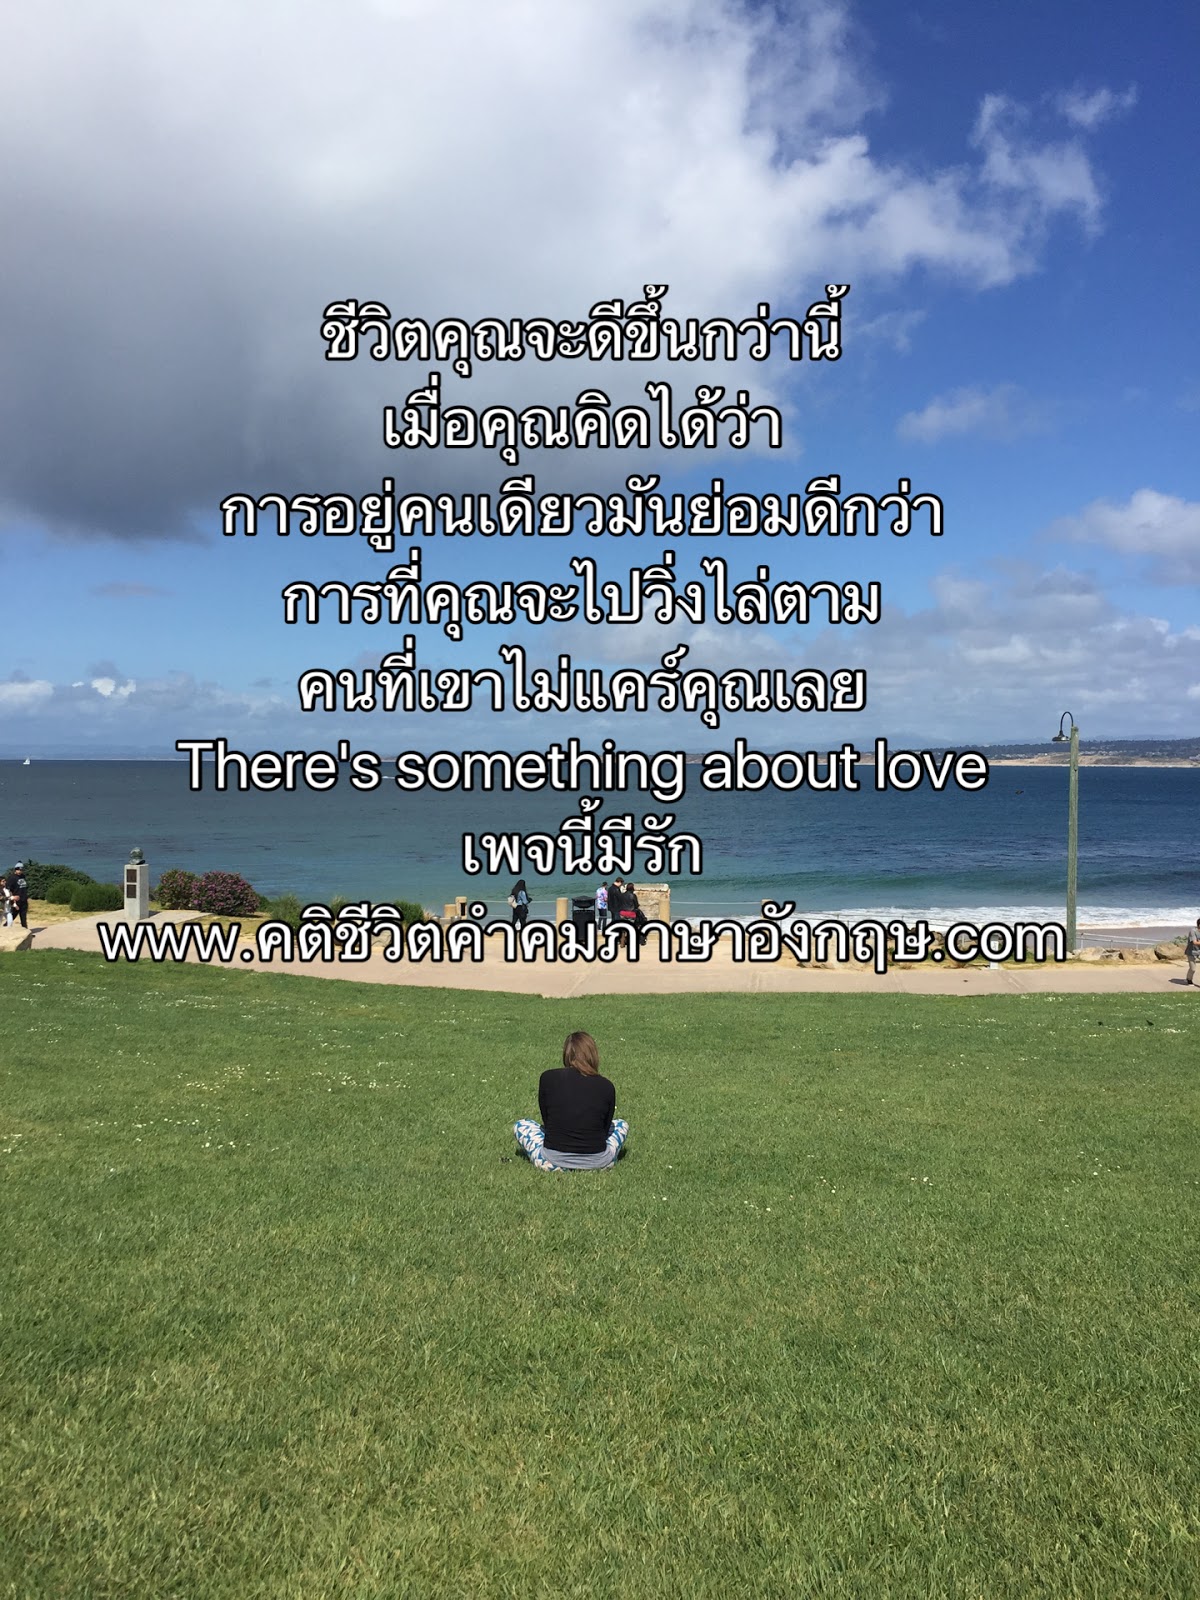 คติชีวิต คำคม คำคมภาษาอังกฤษแปลไทย: ความรักของเบลล่า